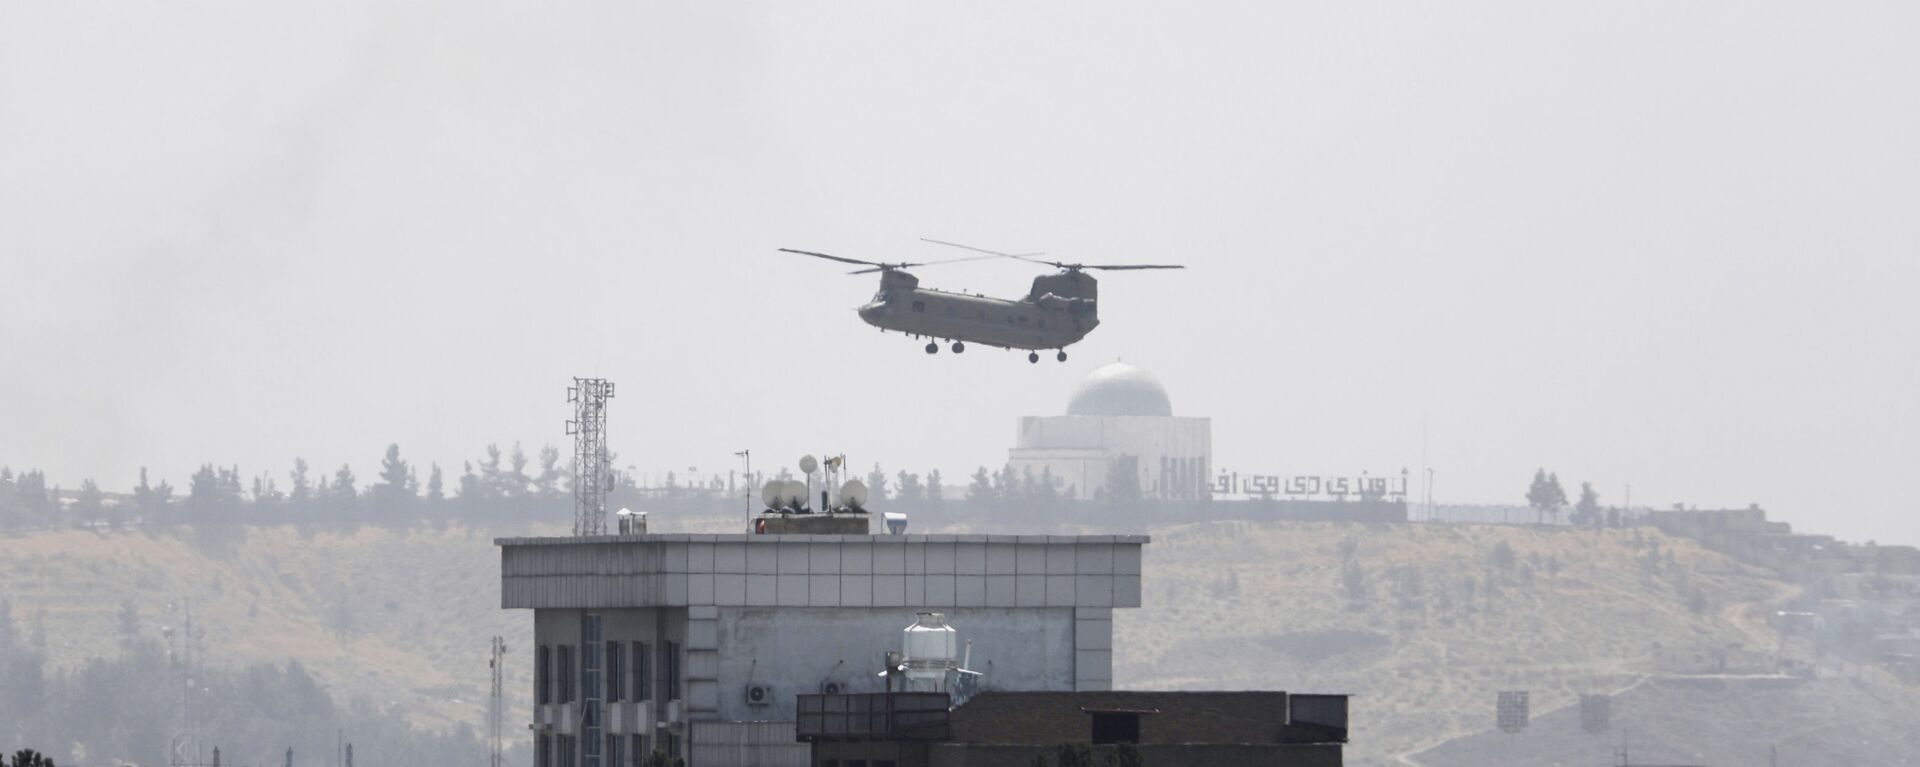 Вертолет США Chinook возле посольства США в Кабуле, Афганистан, 15 августа 2021 г.  - Sputnik Азербайджан, 1920, 16.08.2021